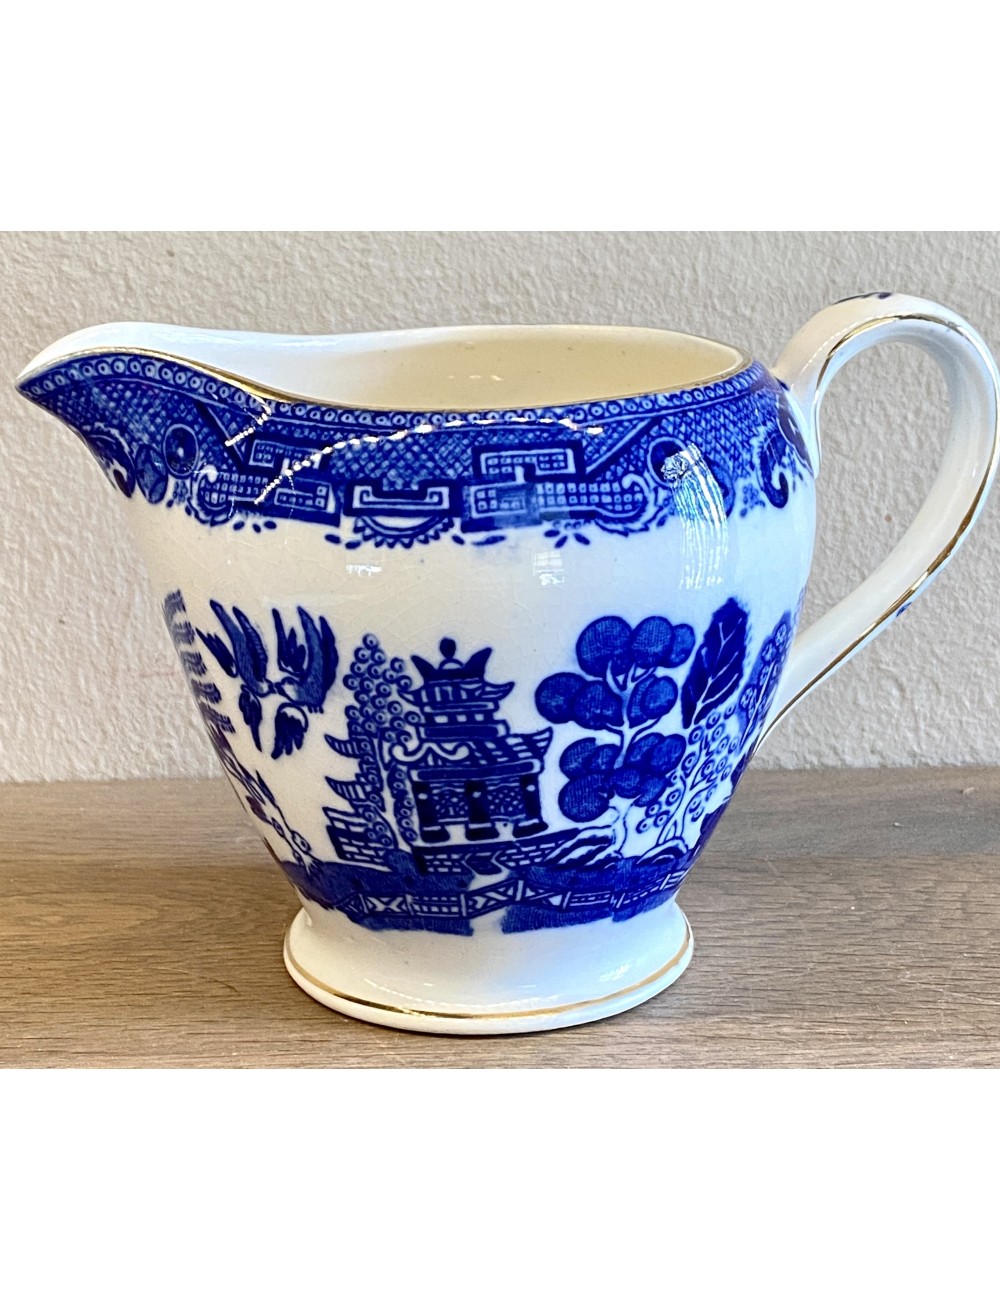 Melkkan - Victoria porcelain - décor WILLOW blauw met goudgekleurde lijntjes